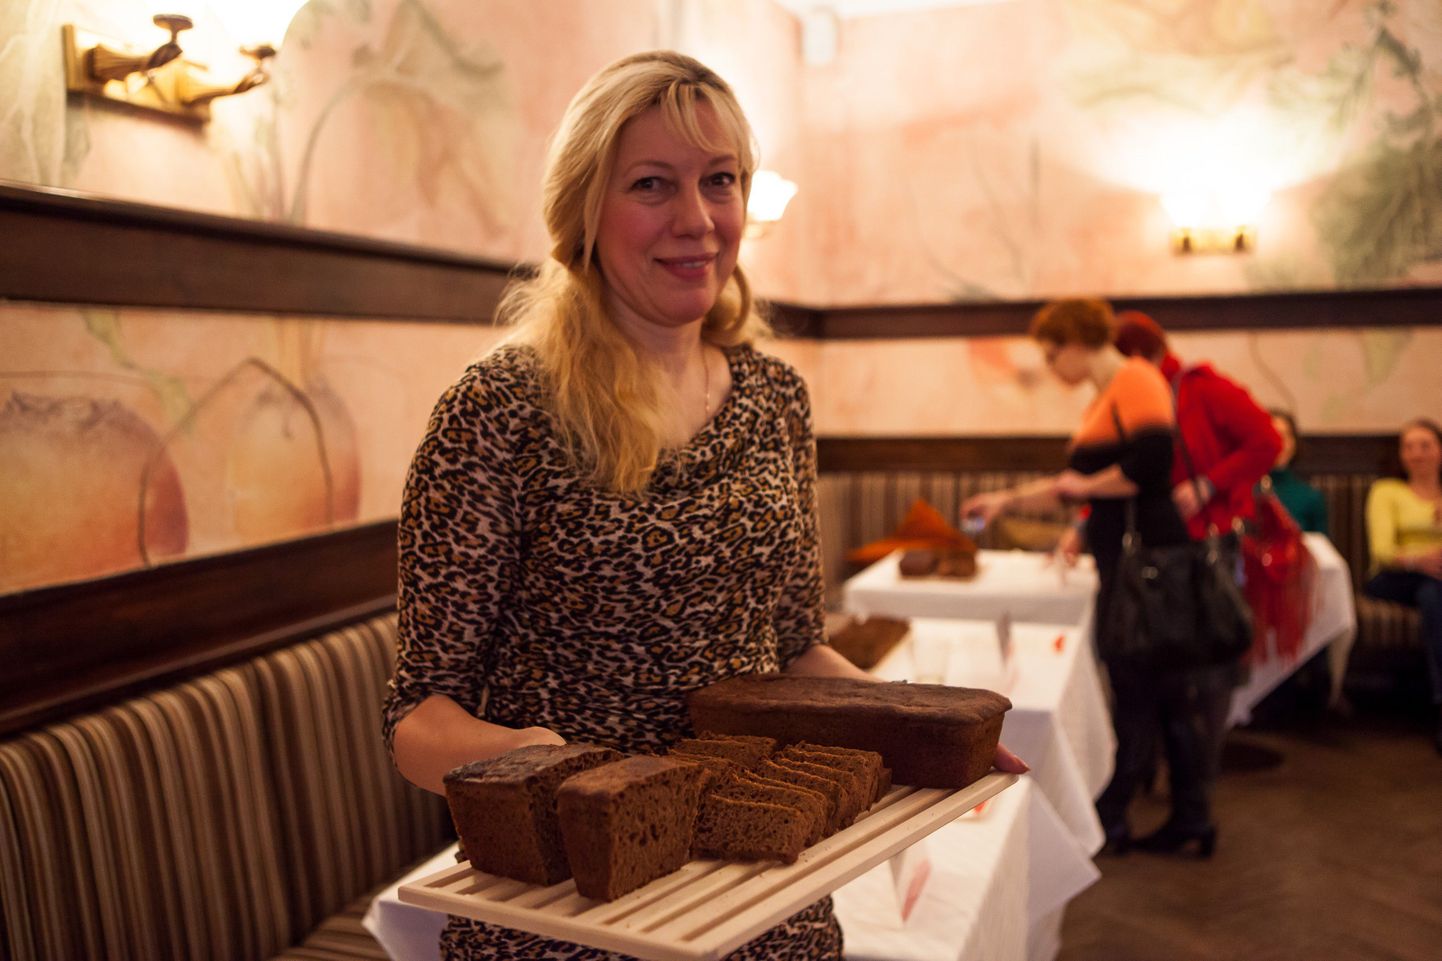 Leiburi korraldatud konkursi «Leiburi Leivategu 2013» võitis haridustöötaja Eha Karus Jõhvist leivaga «Hommikusöögileib».